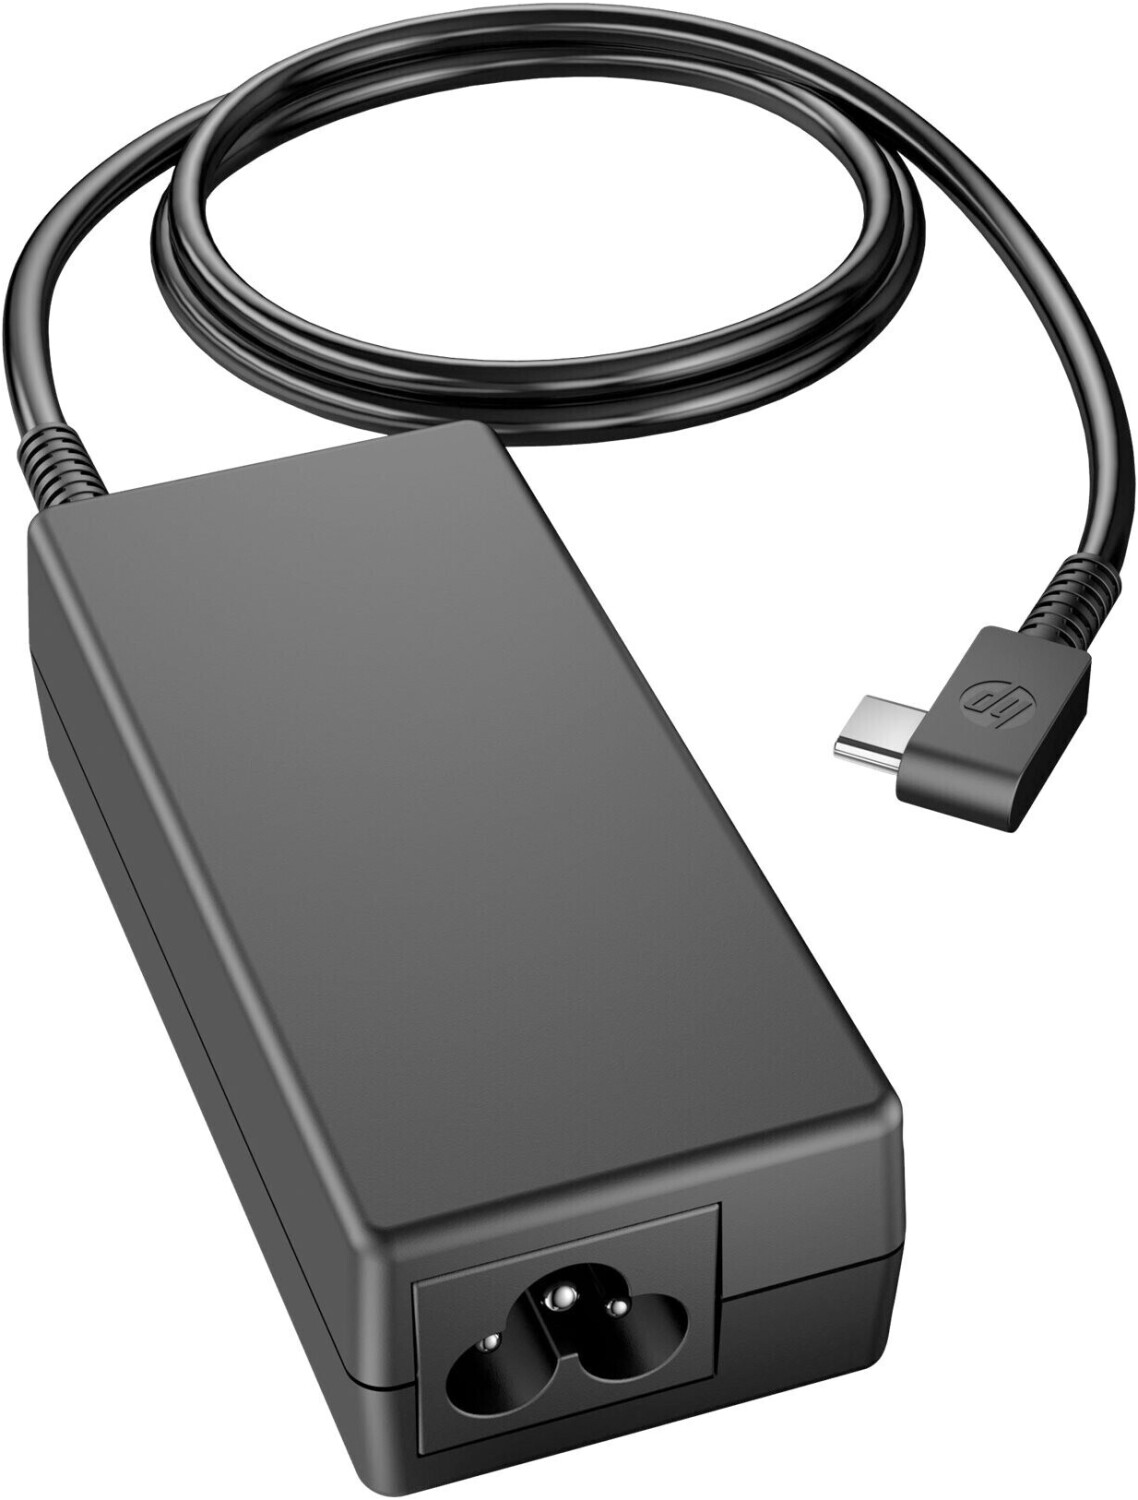 HP USB-C 45W Chargeur ordinateur portable, Acheter HP Adaptateur